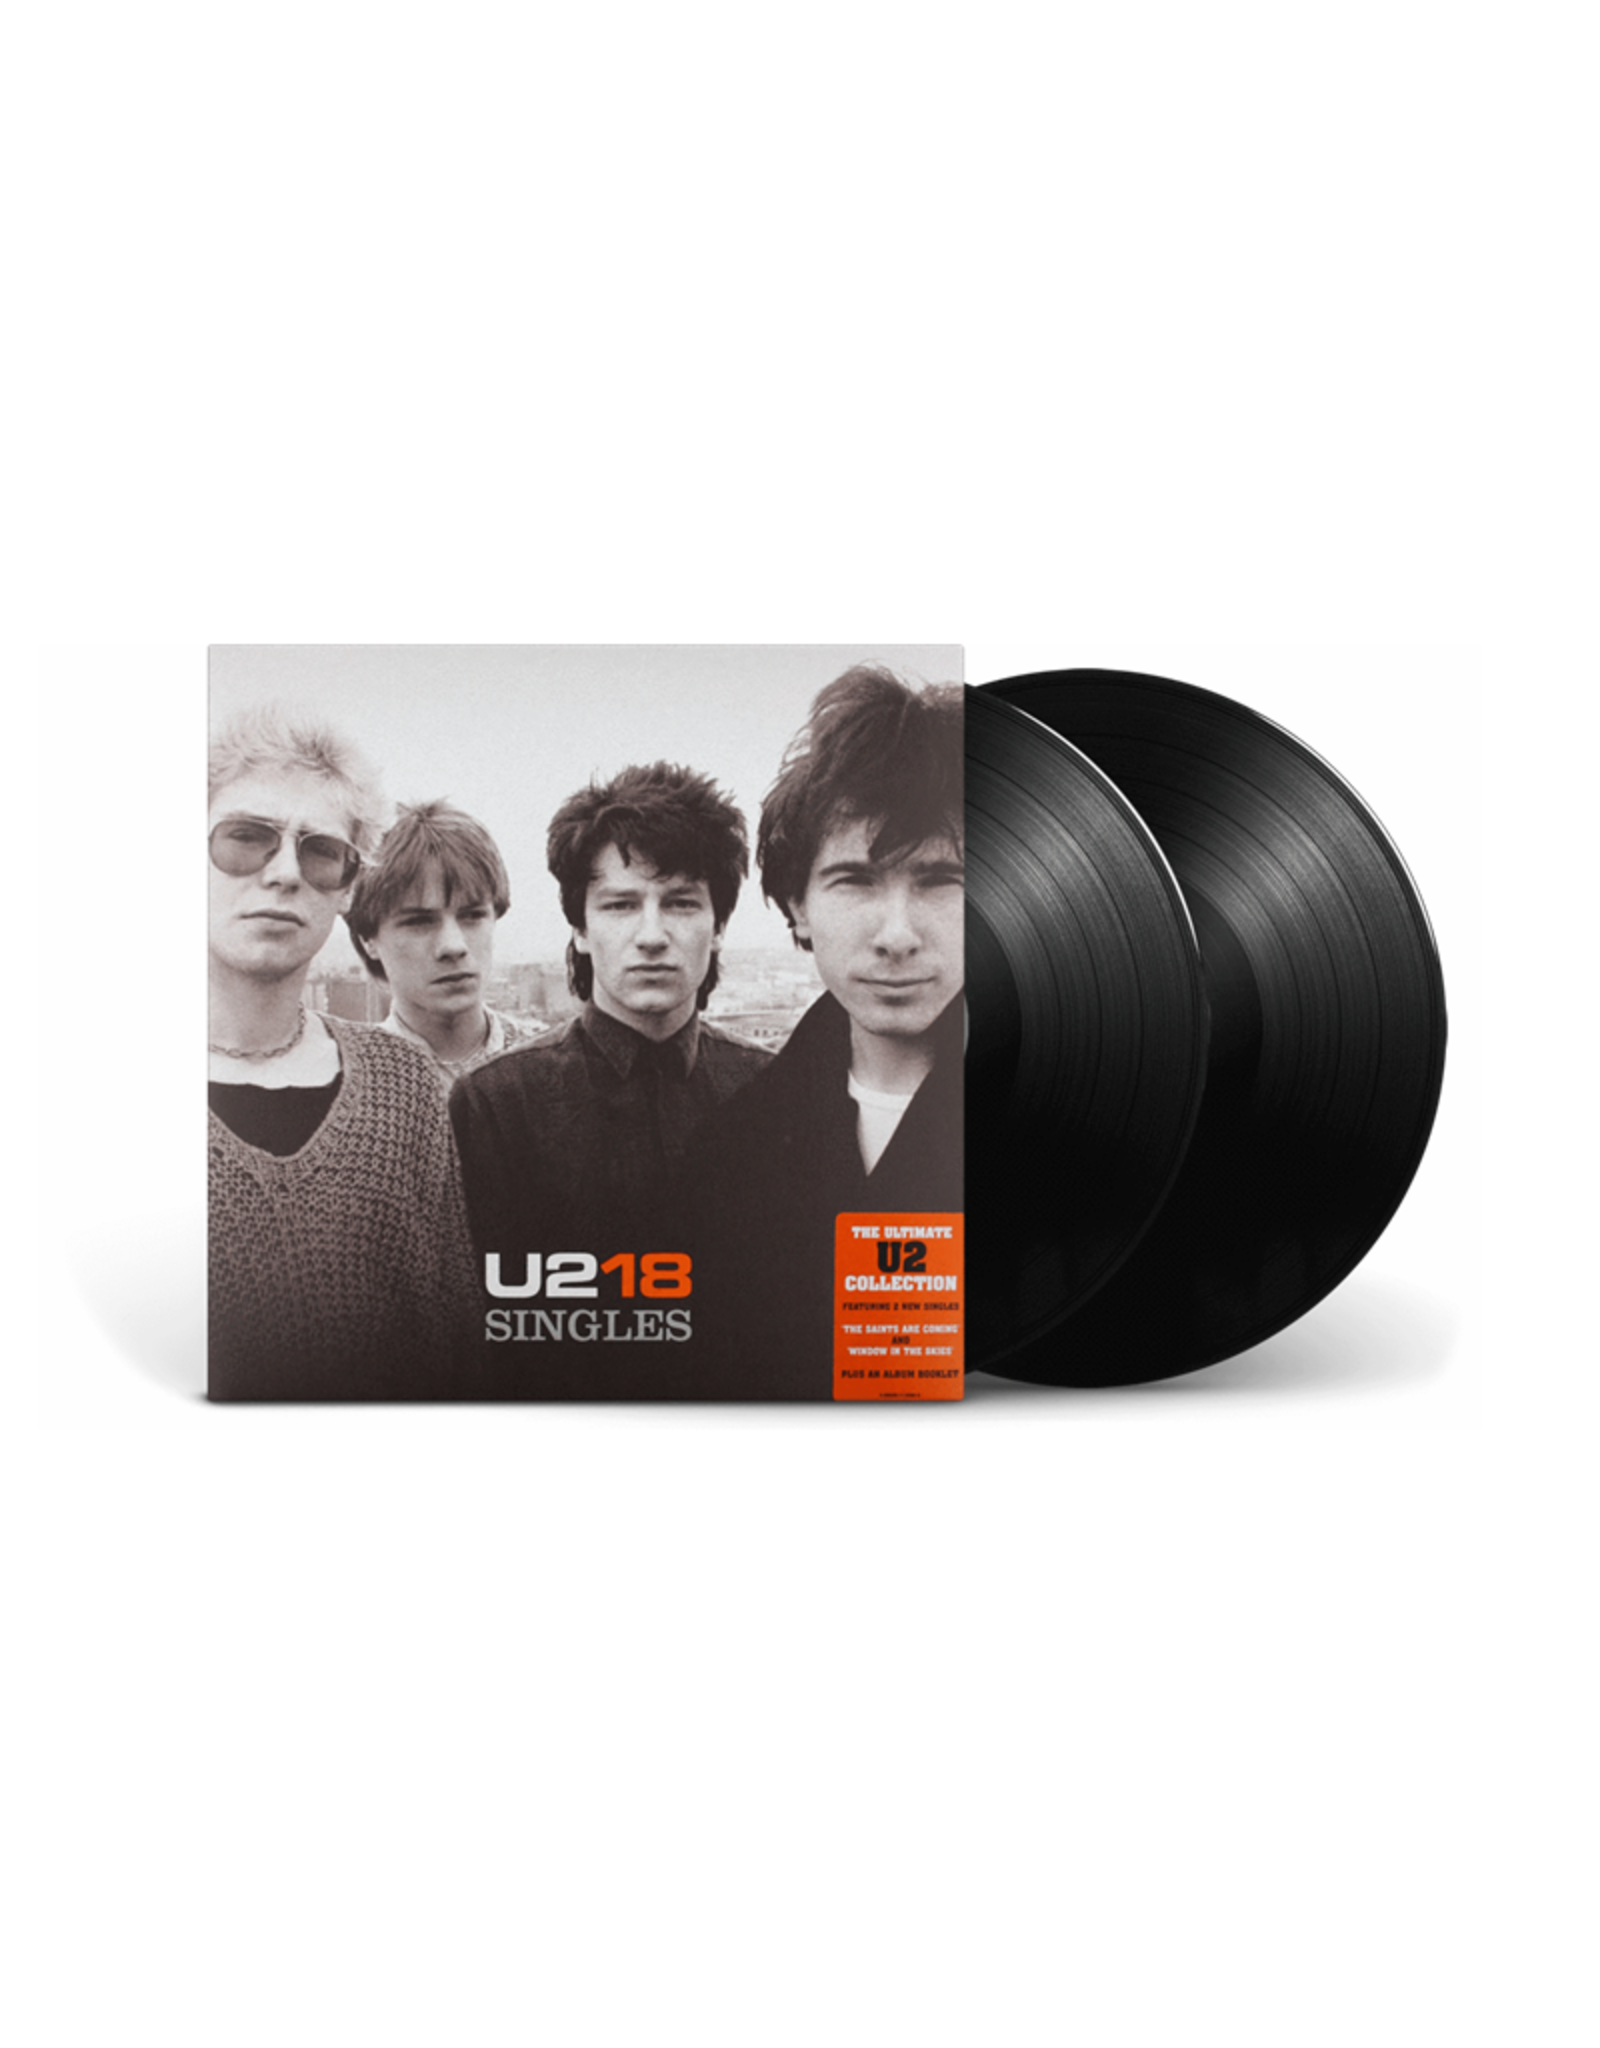 U2 - U218 Singles (Best Of) [Vinyl] - Pop Music